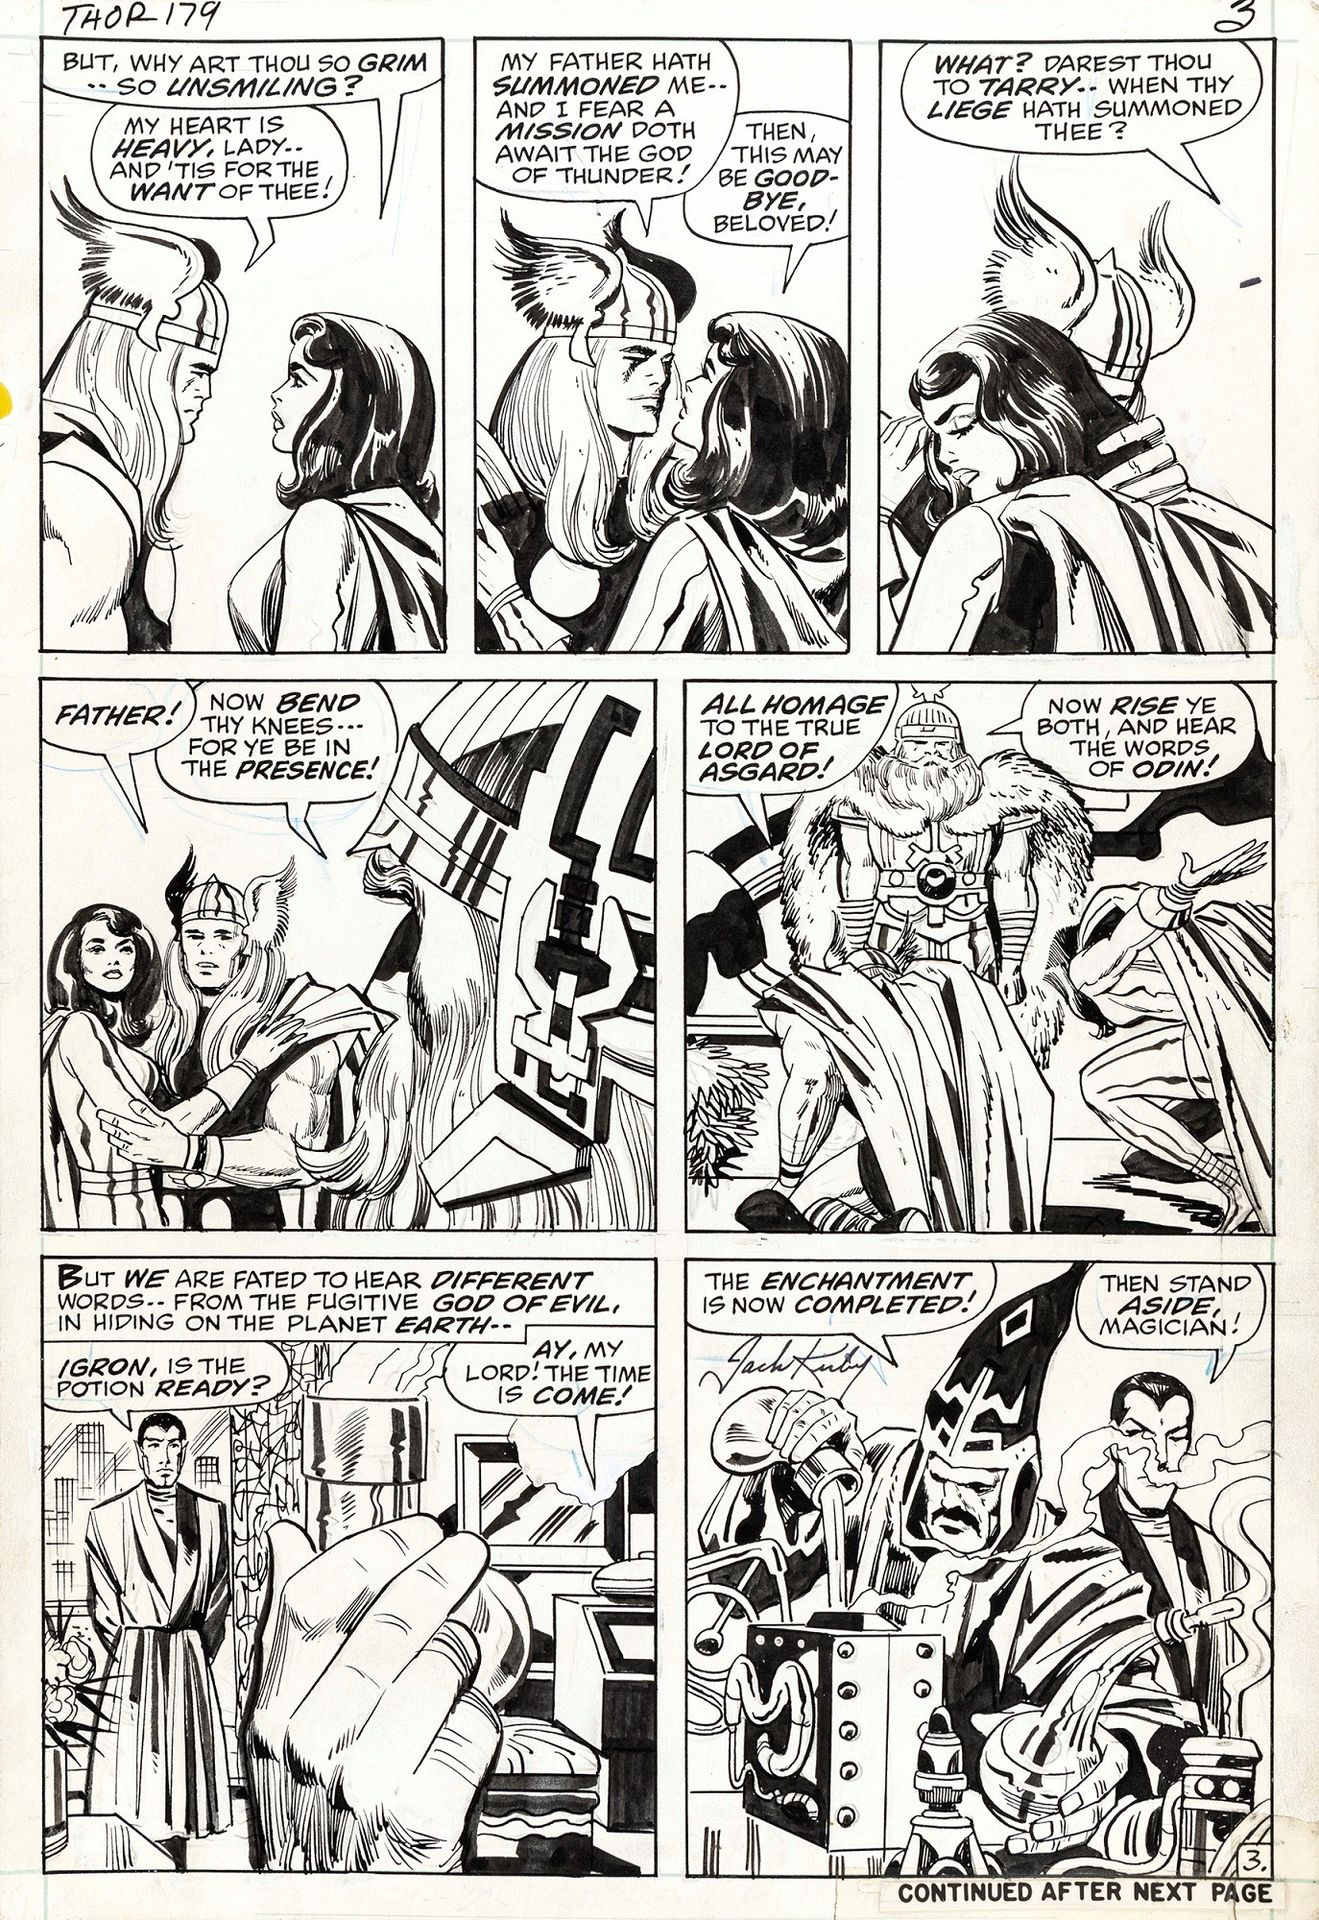 Jack Kirby Thor - ¡No más el Dios del Trueno!, 1970

lápiz y tinta sobre cartuli&hellip;